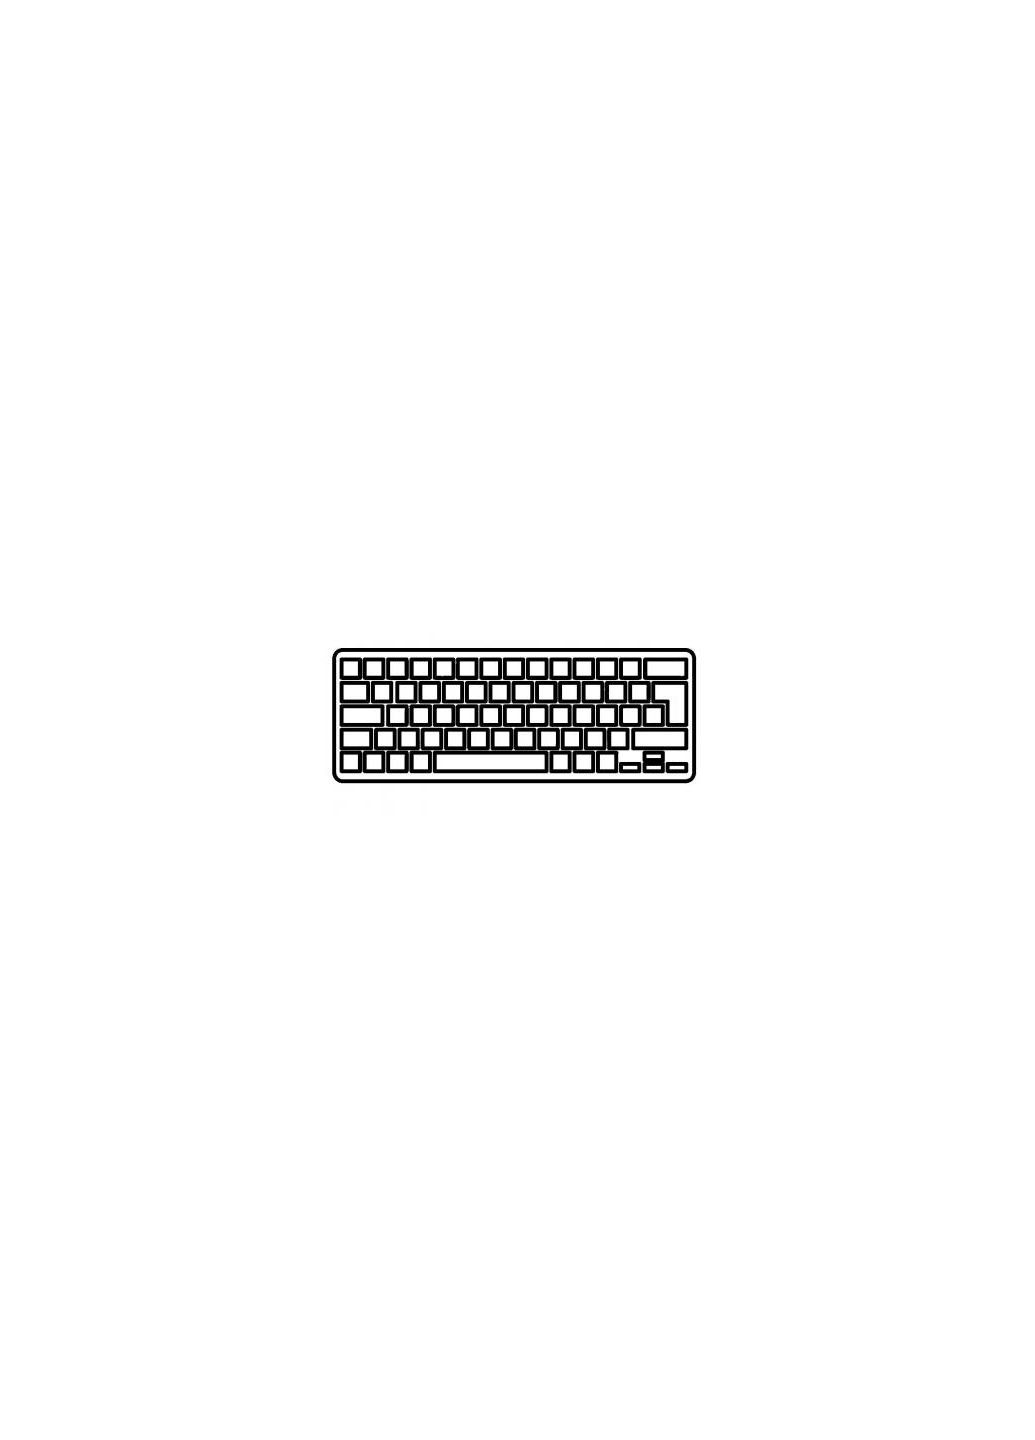 Клавиатура ноутбука Aspire V5473/V5-433/M5-483 Series черная без рамки RU (A43724) Acer aspire v5-473/v5-433/m5-483 series черная без рамк (276707546)